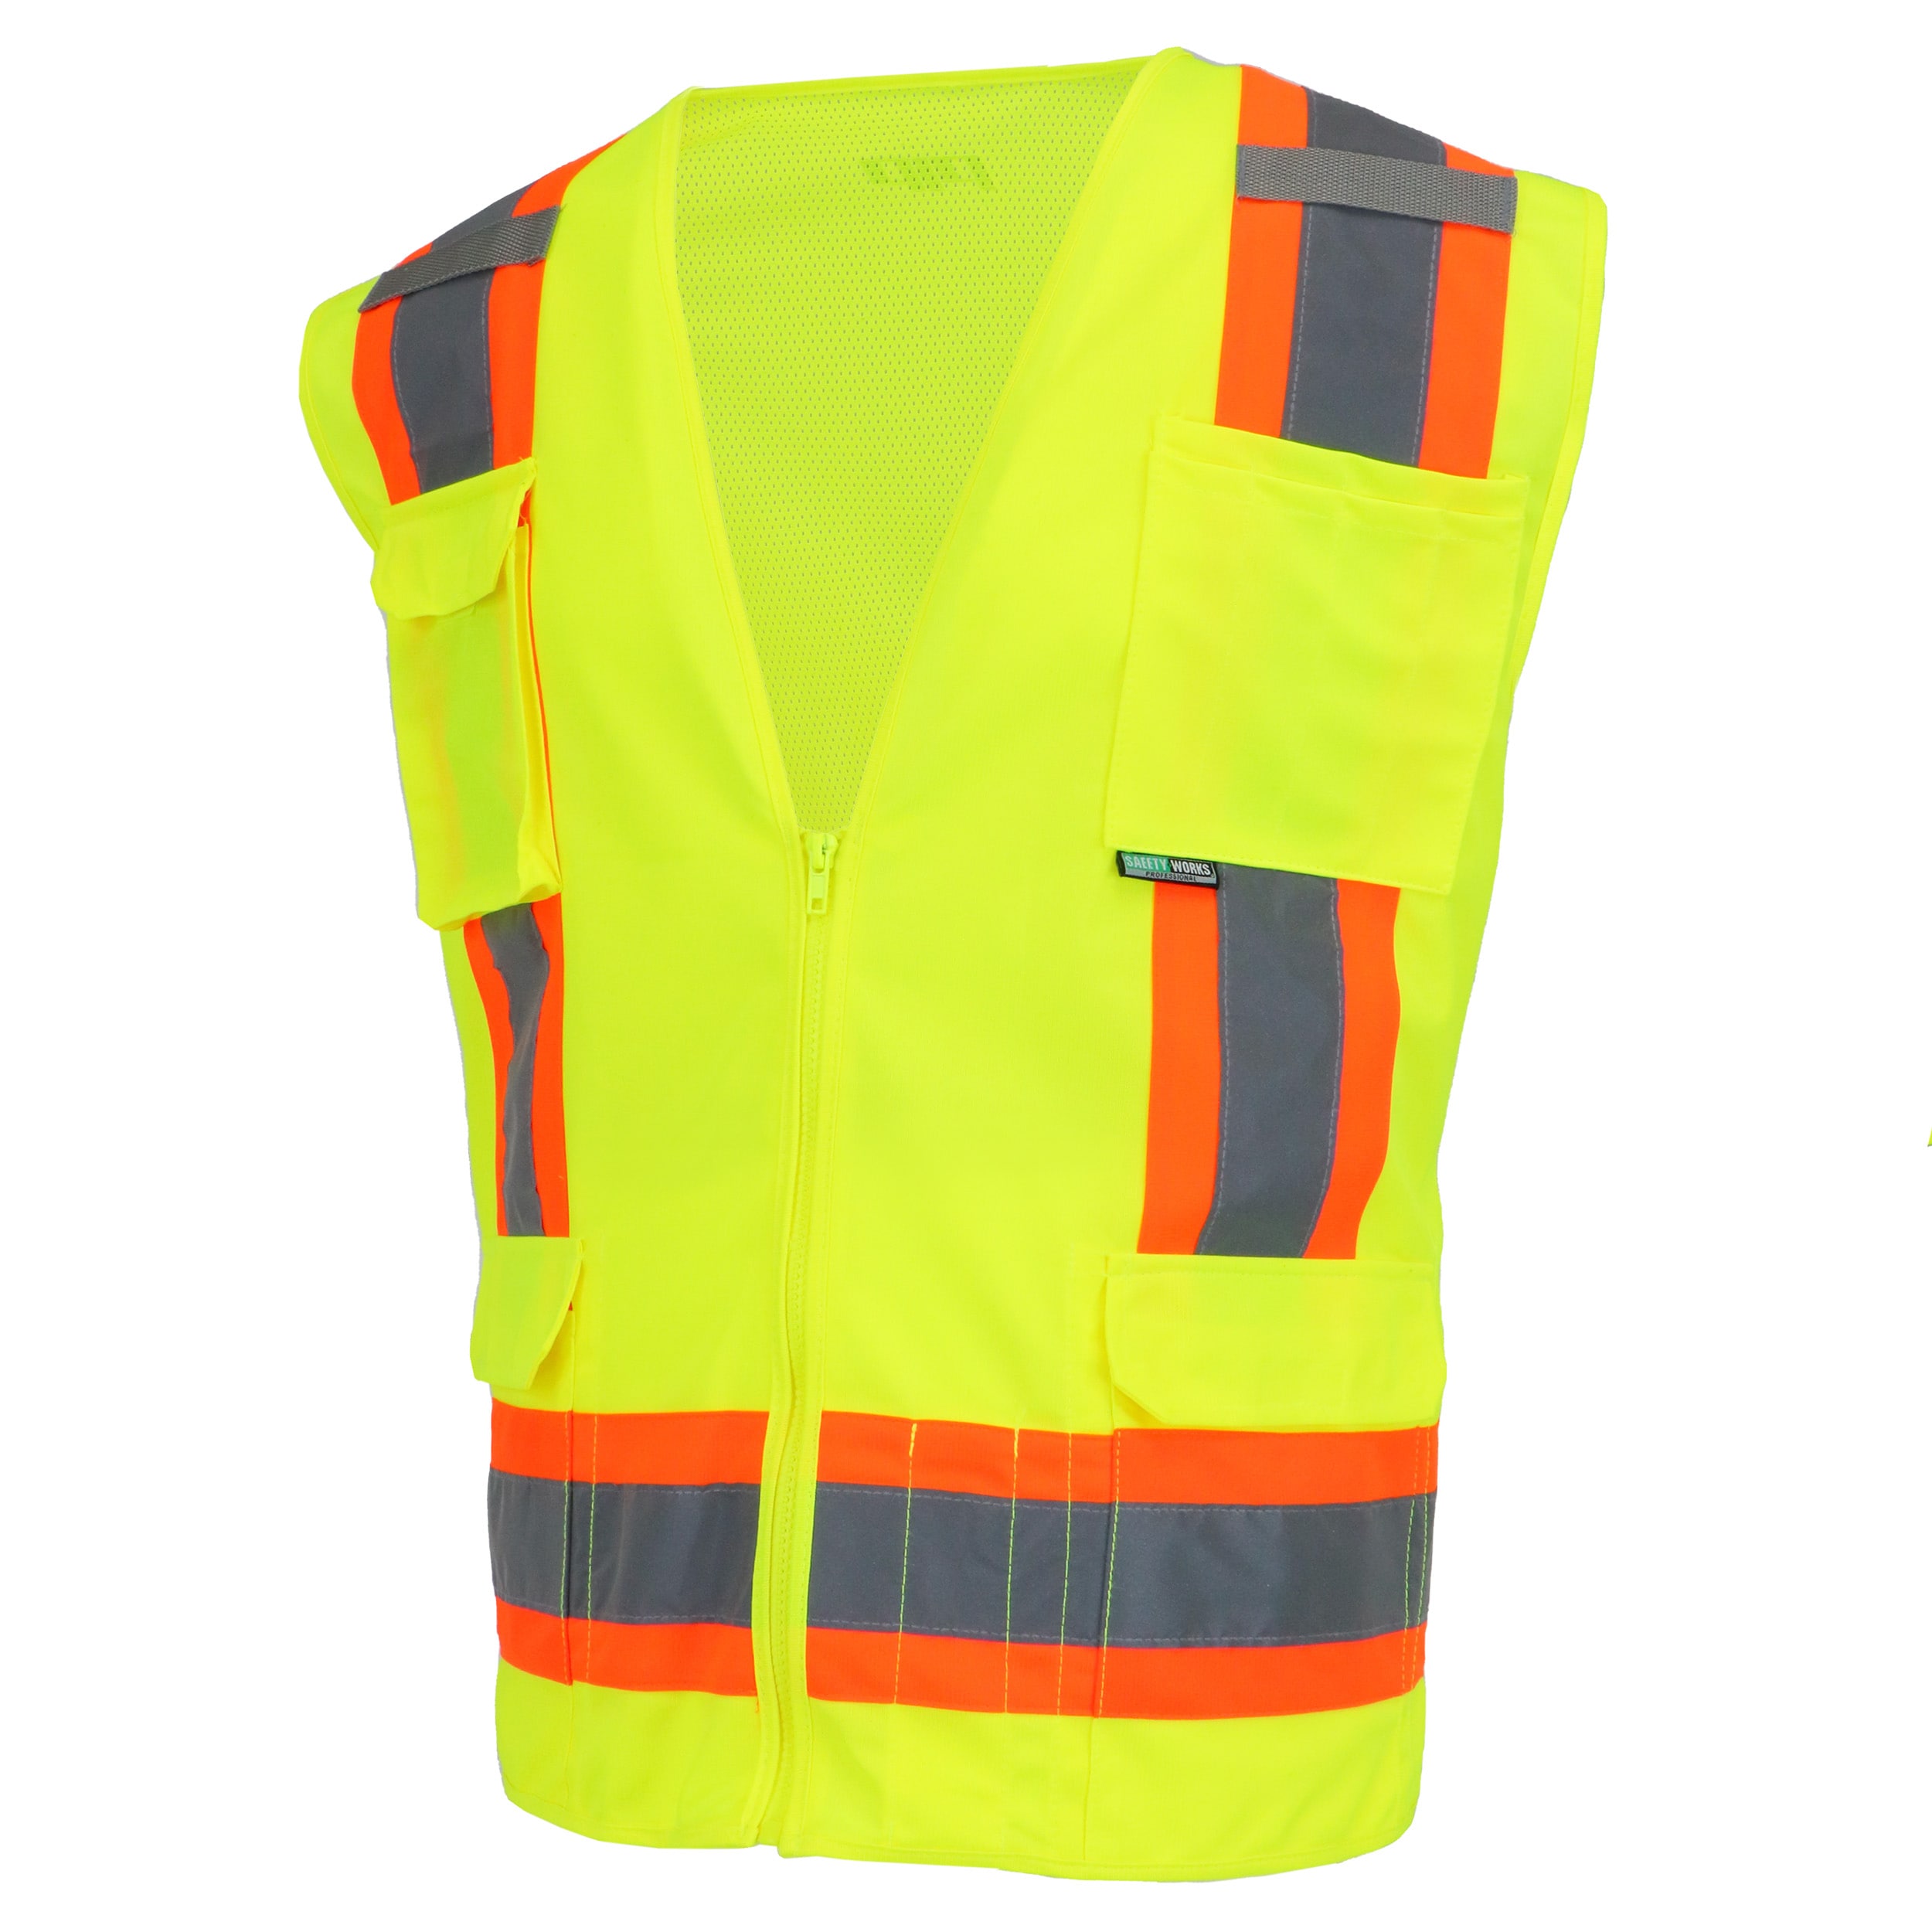 Safe Handler Safety Vests at